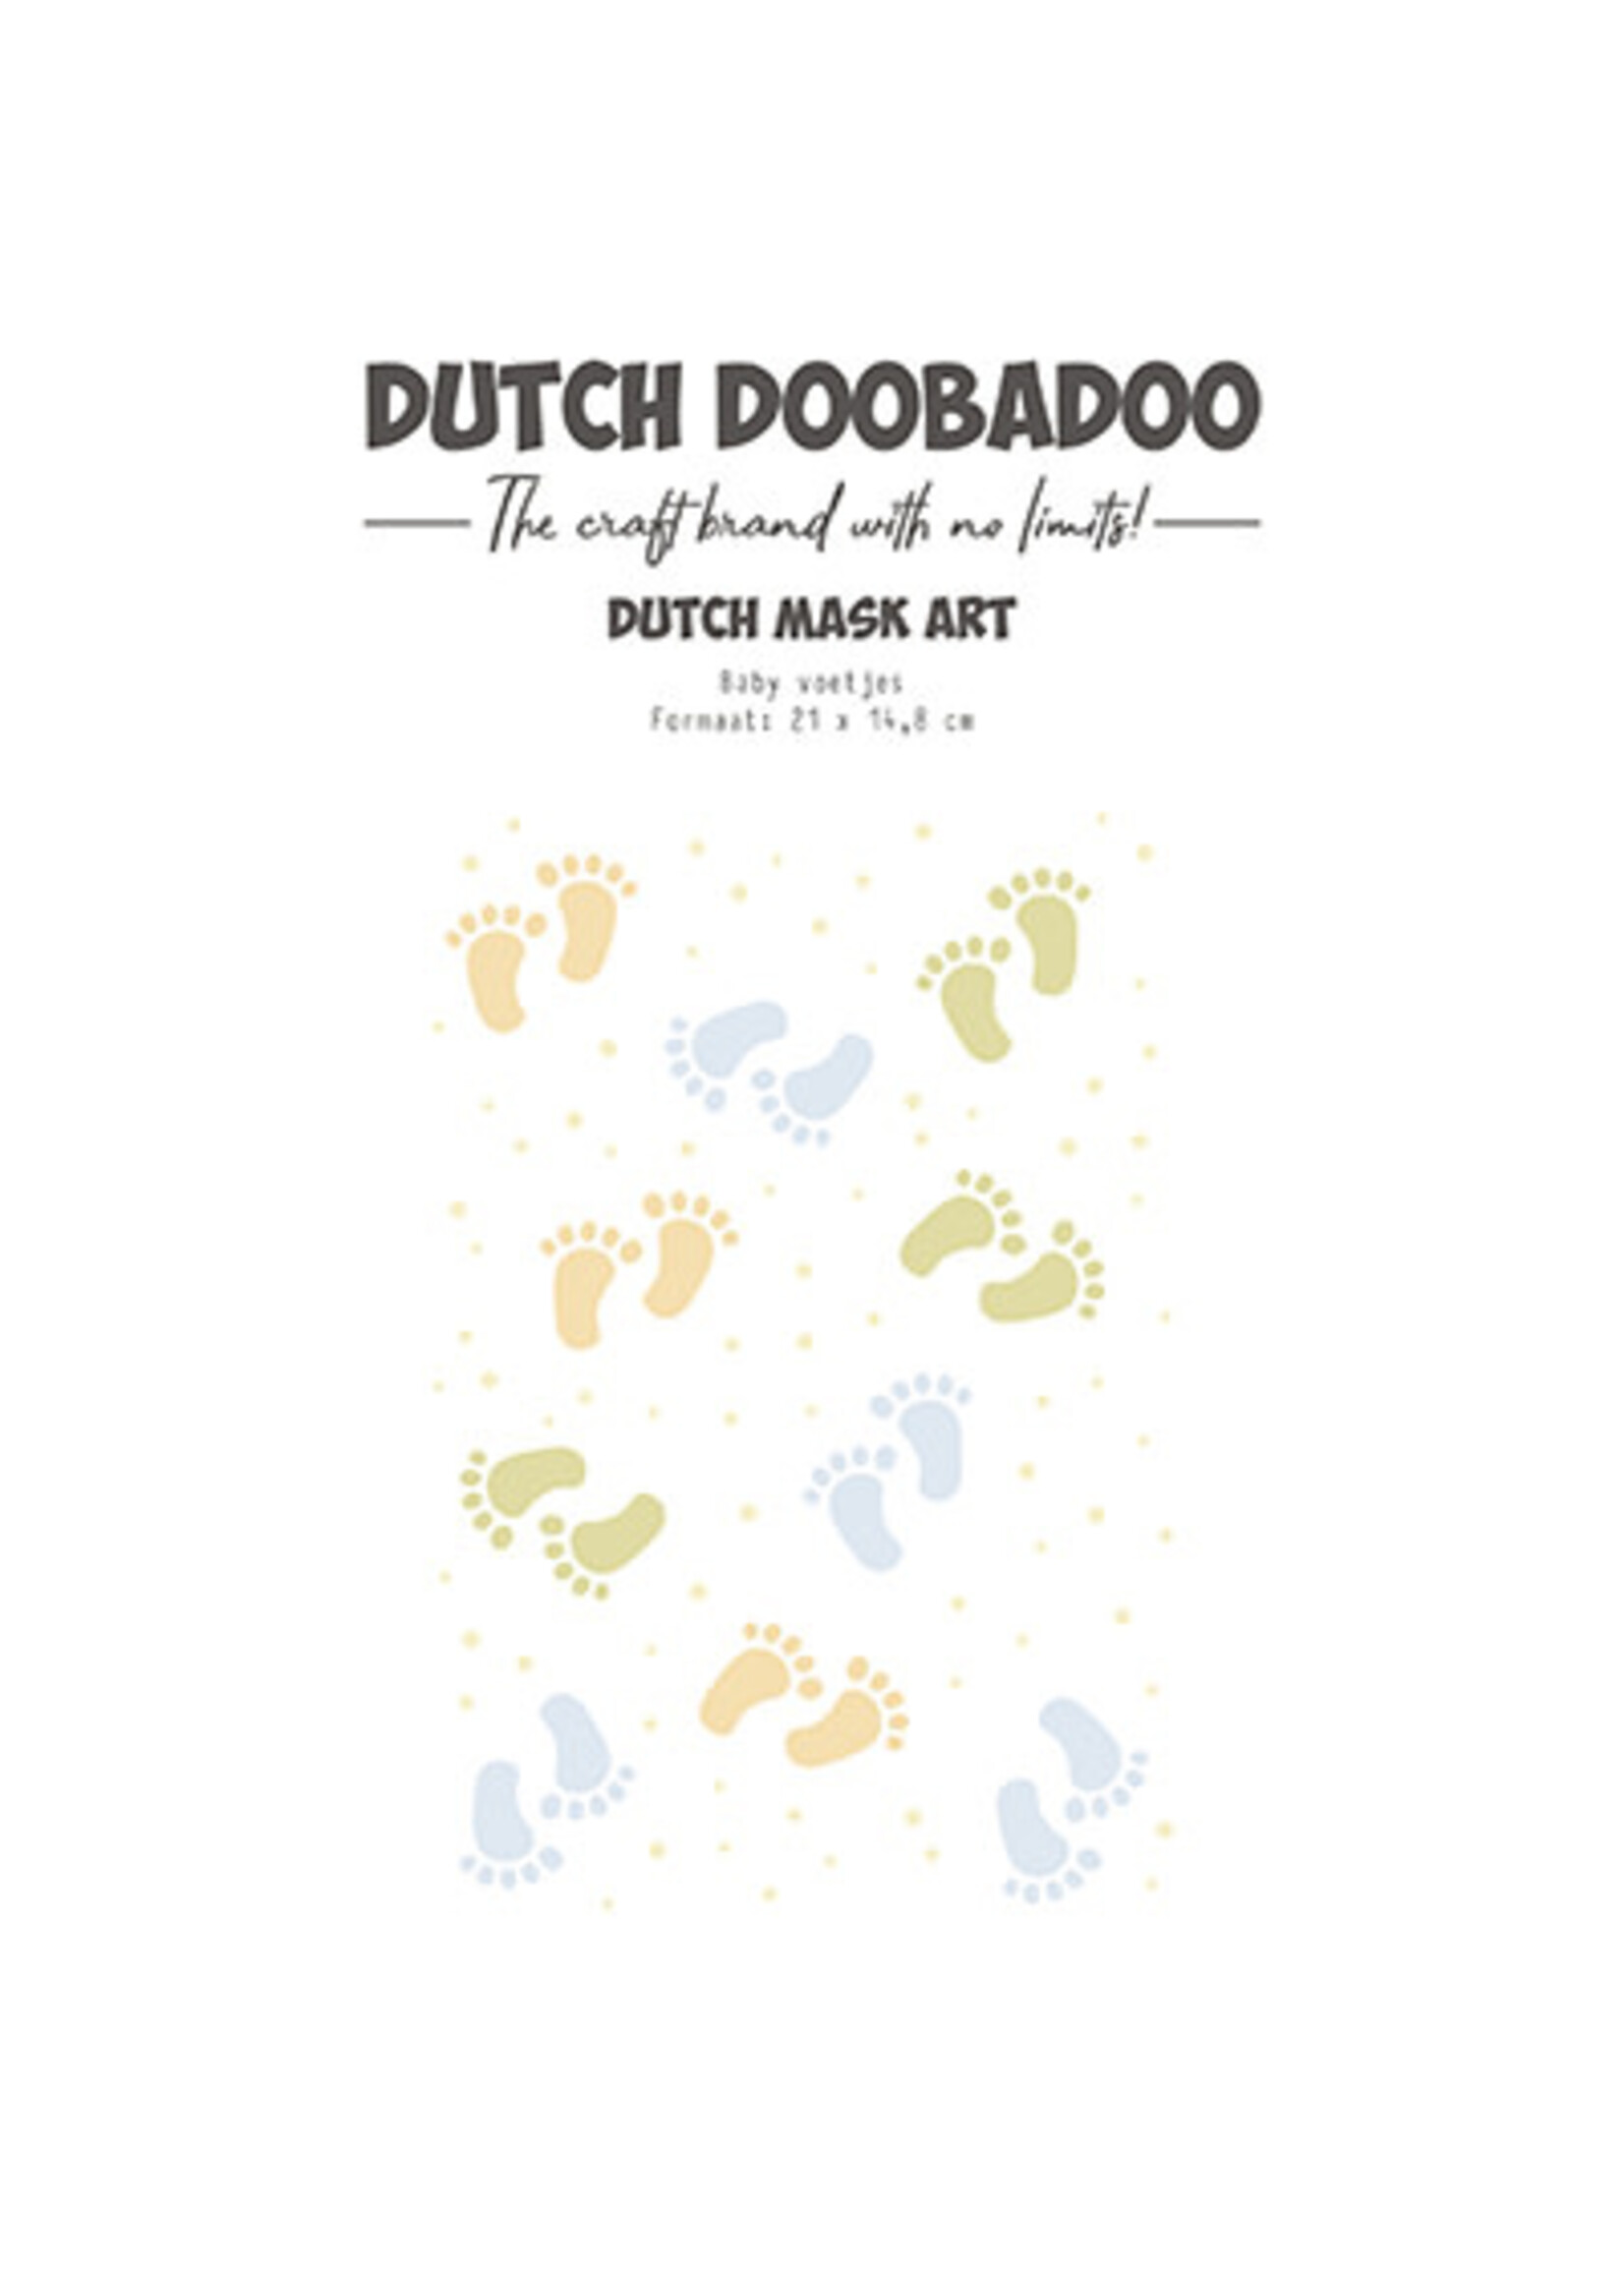 Dutch Doobadoo 470.784.292 - Mask Art Baby Feet